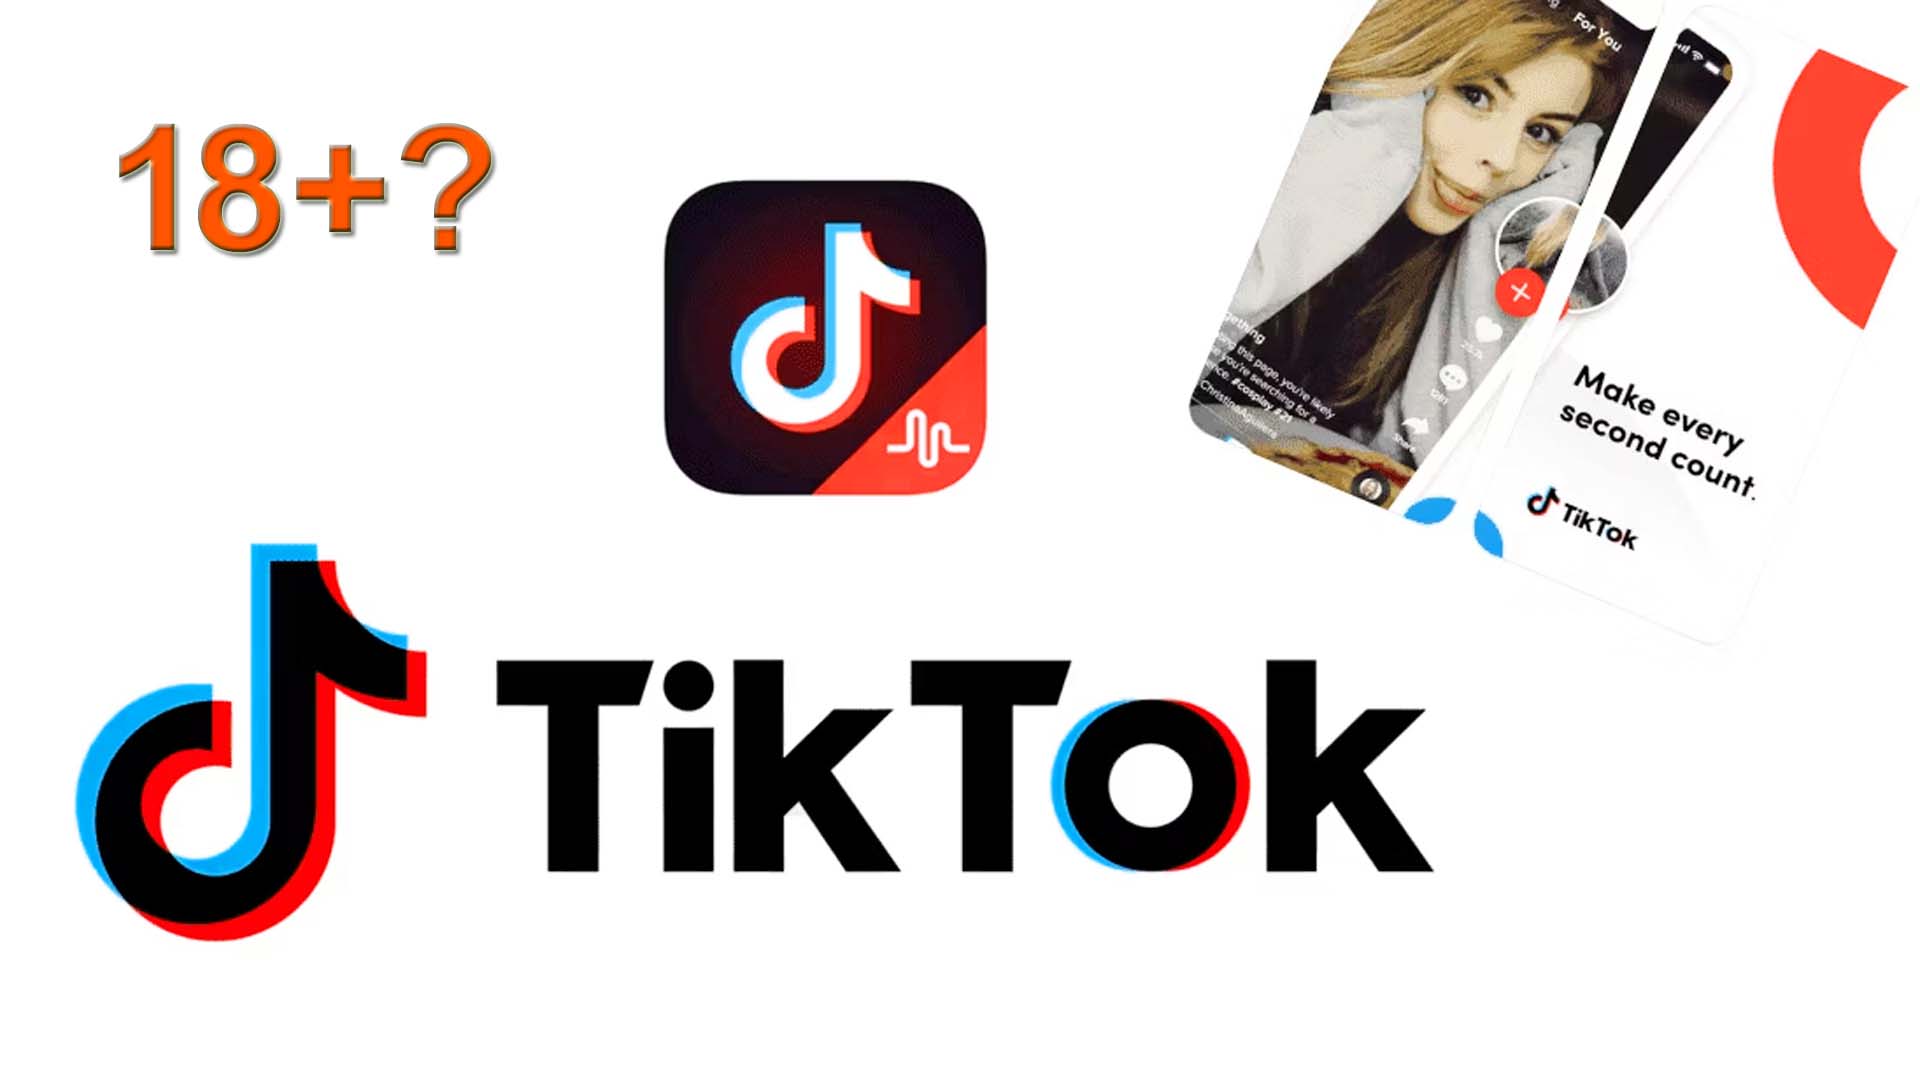 TikTok 18+apk app Myth: Explore Mature Content Safely & Legally